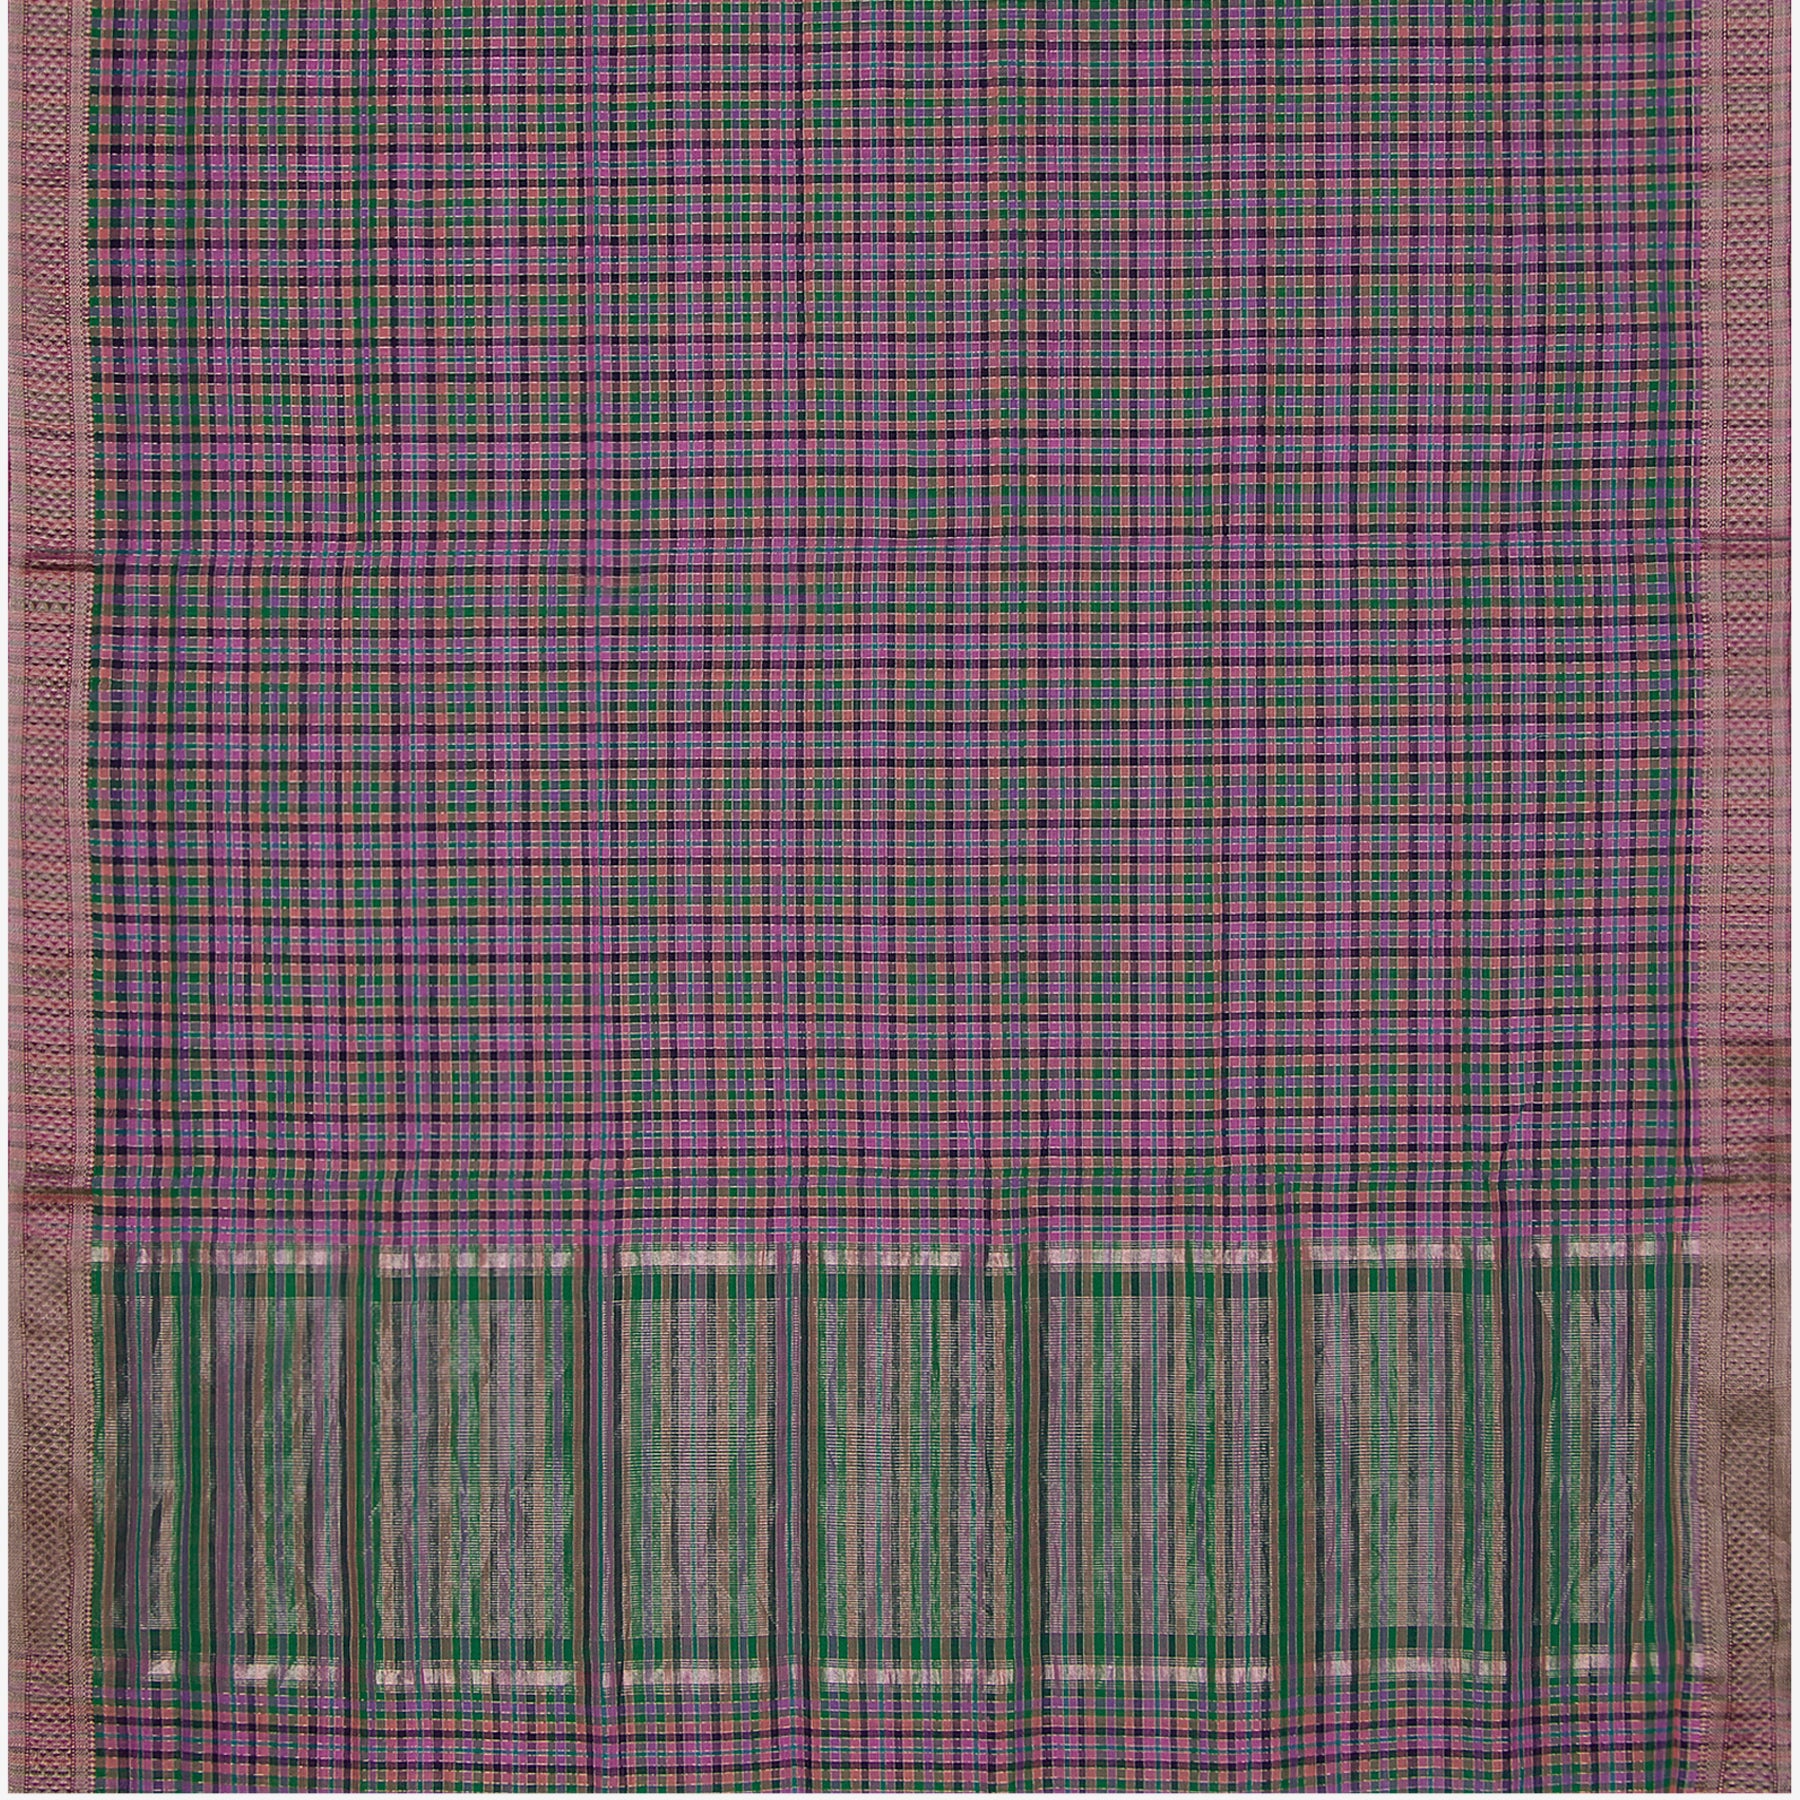 Kanakavalli Mangalgiri Cotton Sari 22-261-HS003-09150 - Full View